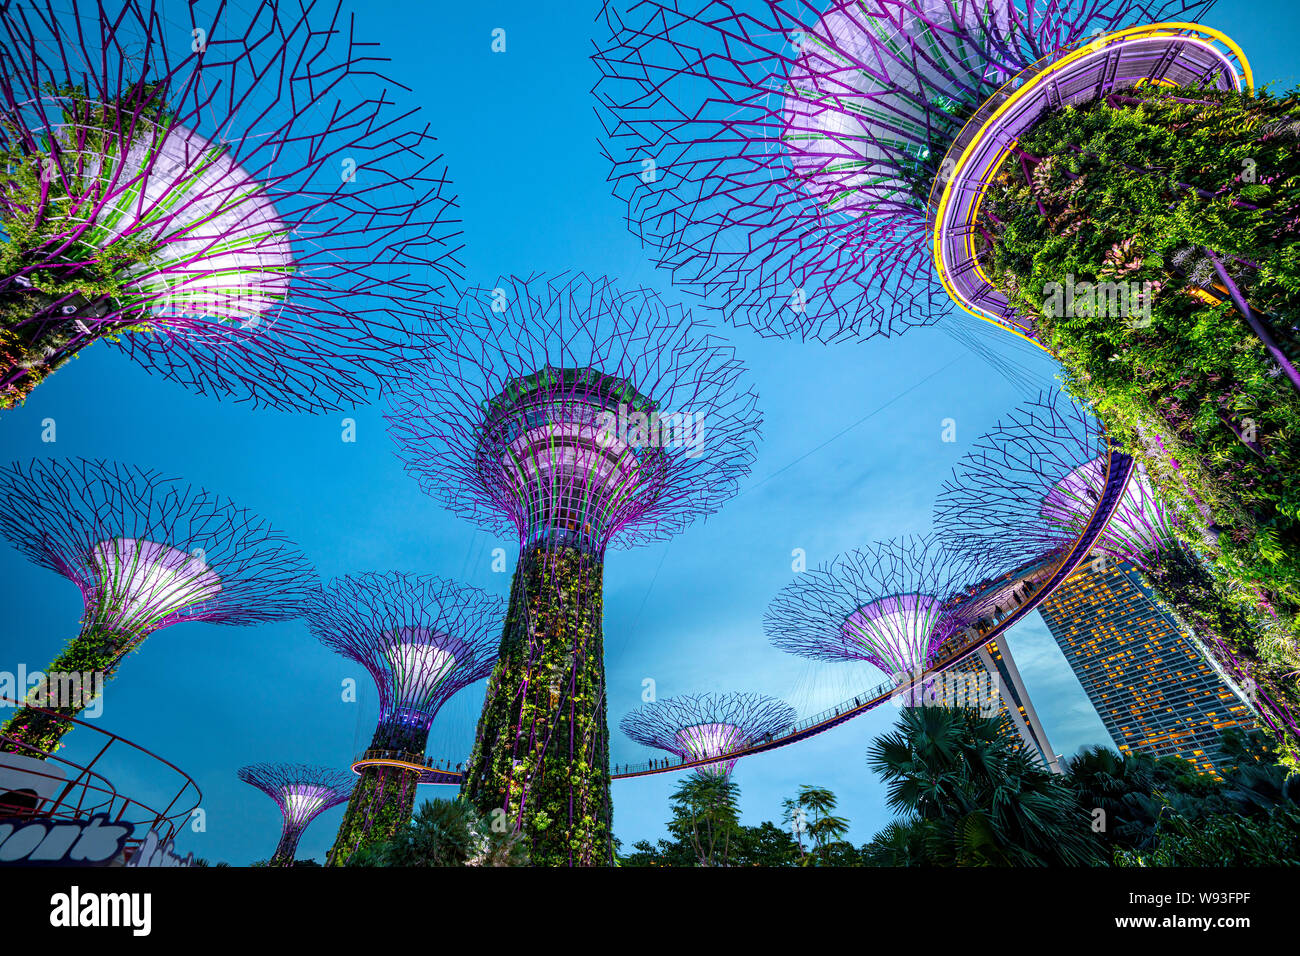 Singapour, Singapour - 7 juin 2019 : upertree de jardins par la baie de Singapour de nuit Banque D'Images